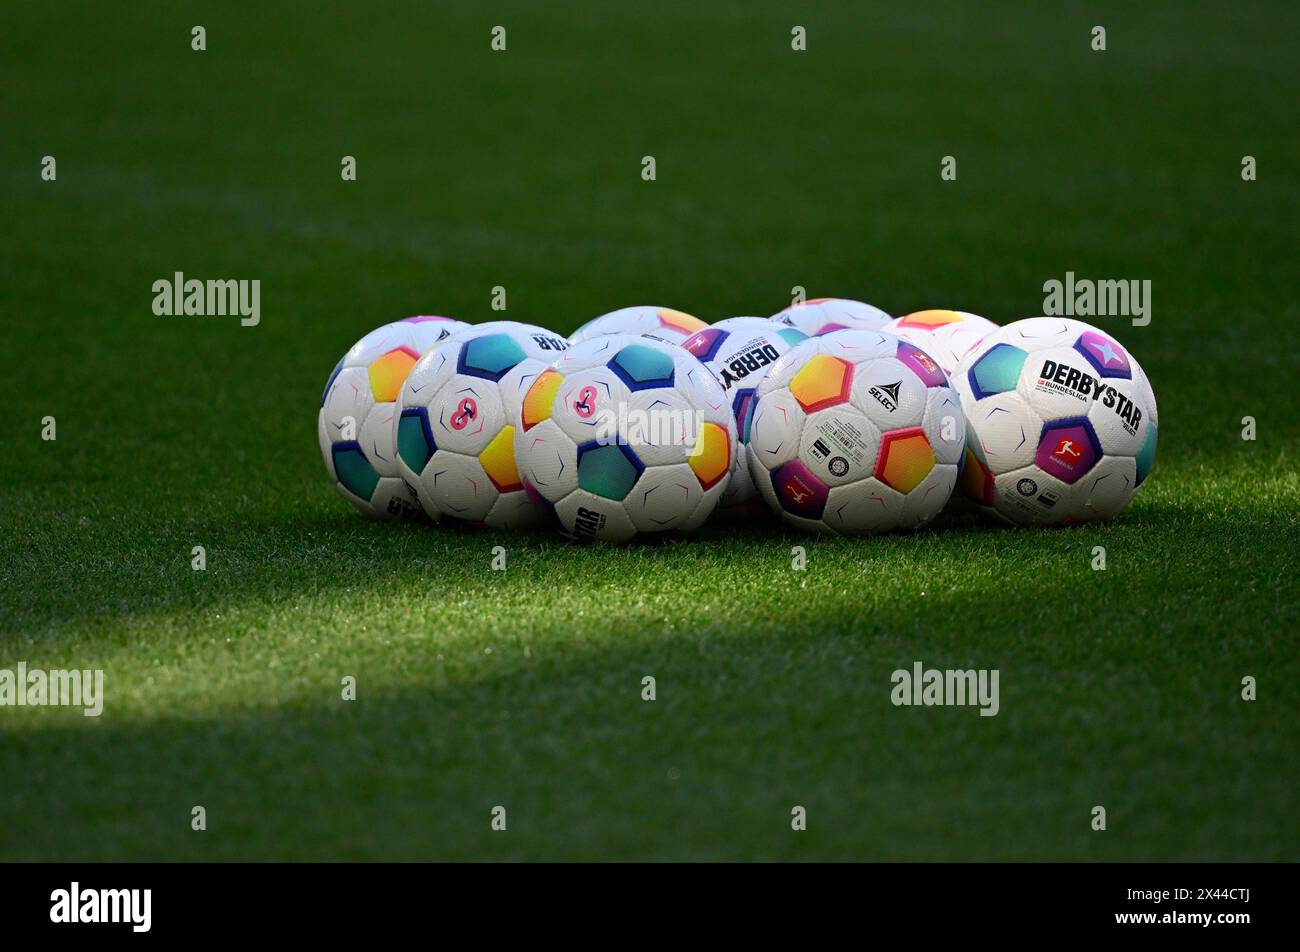 Les balles de match Adidas Derbystar reposent sur l'herbe, Allianz Arena, Munich, Bavière, Allemagne Banque D'Images